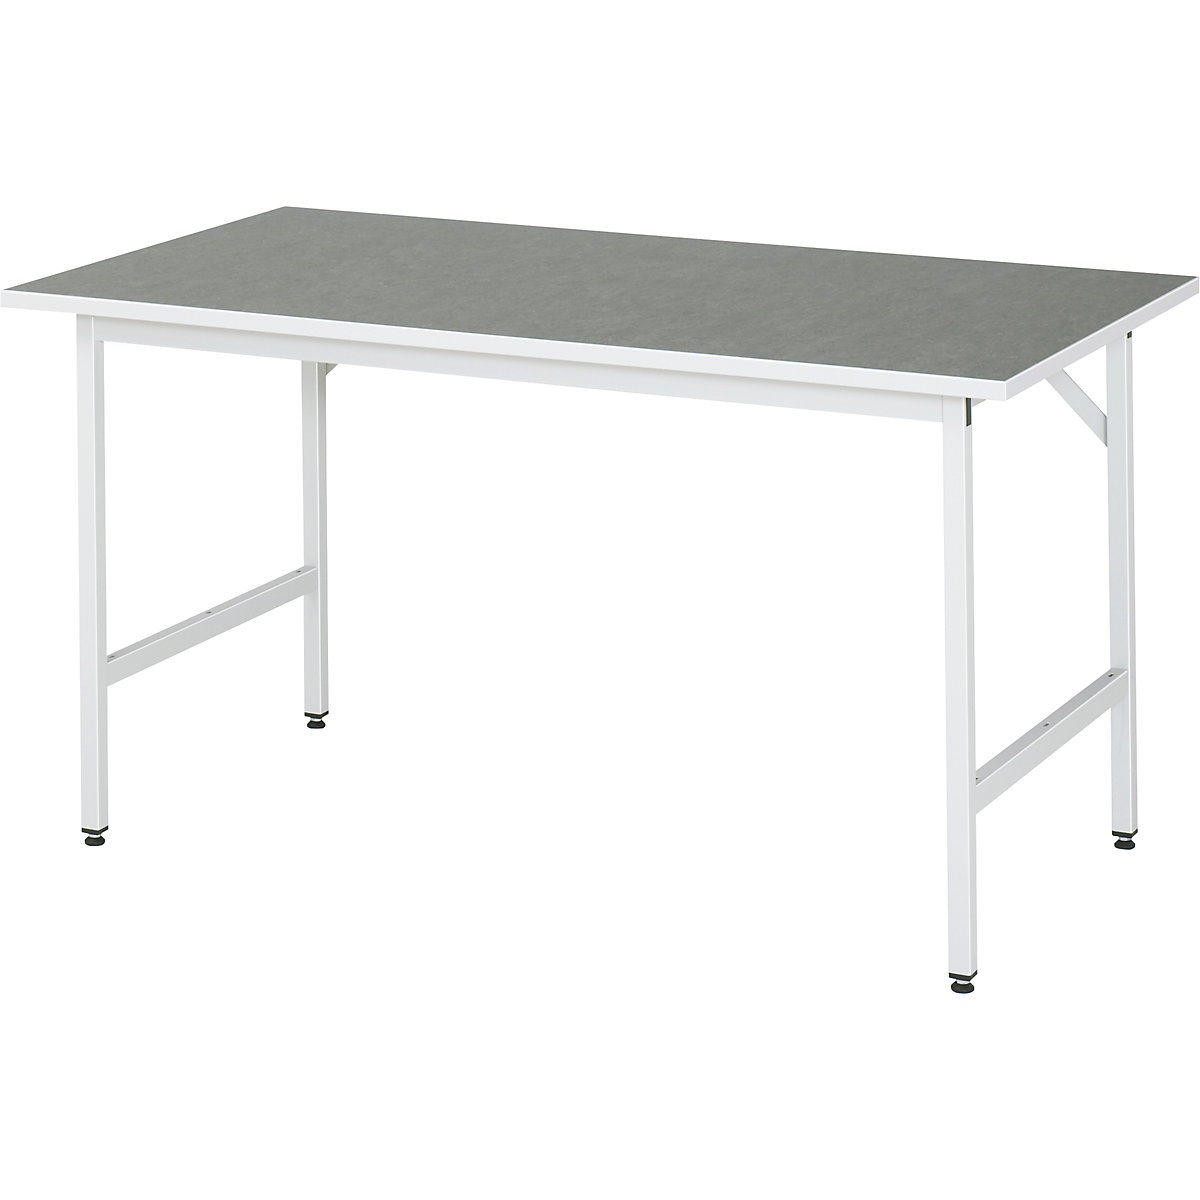 Munkaasztal, állítható magasságú – RAU, 800 – 850 mm, linóleum lap, szé x mé 1500 x 800 mm, világosszürke-8